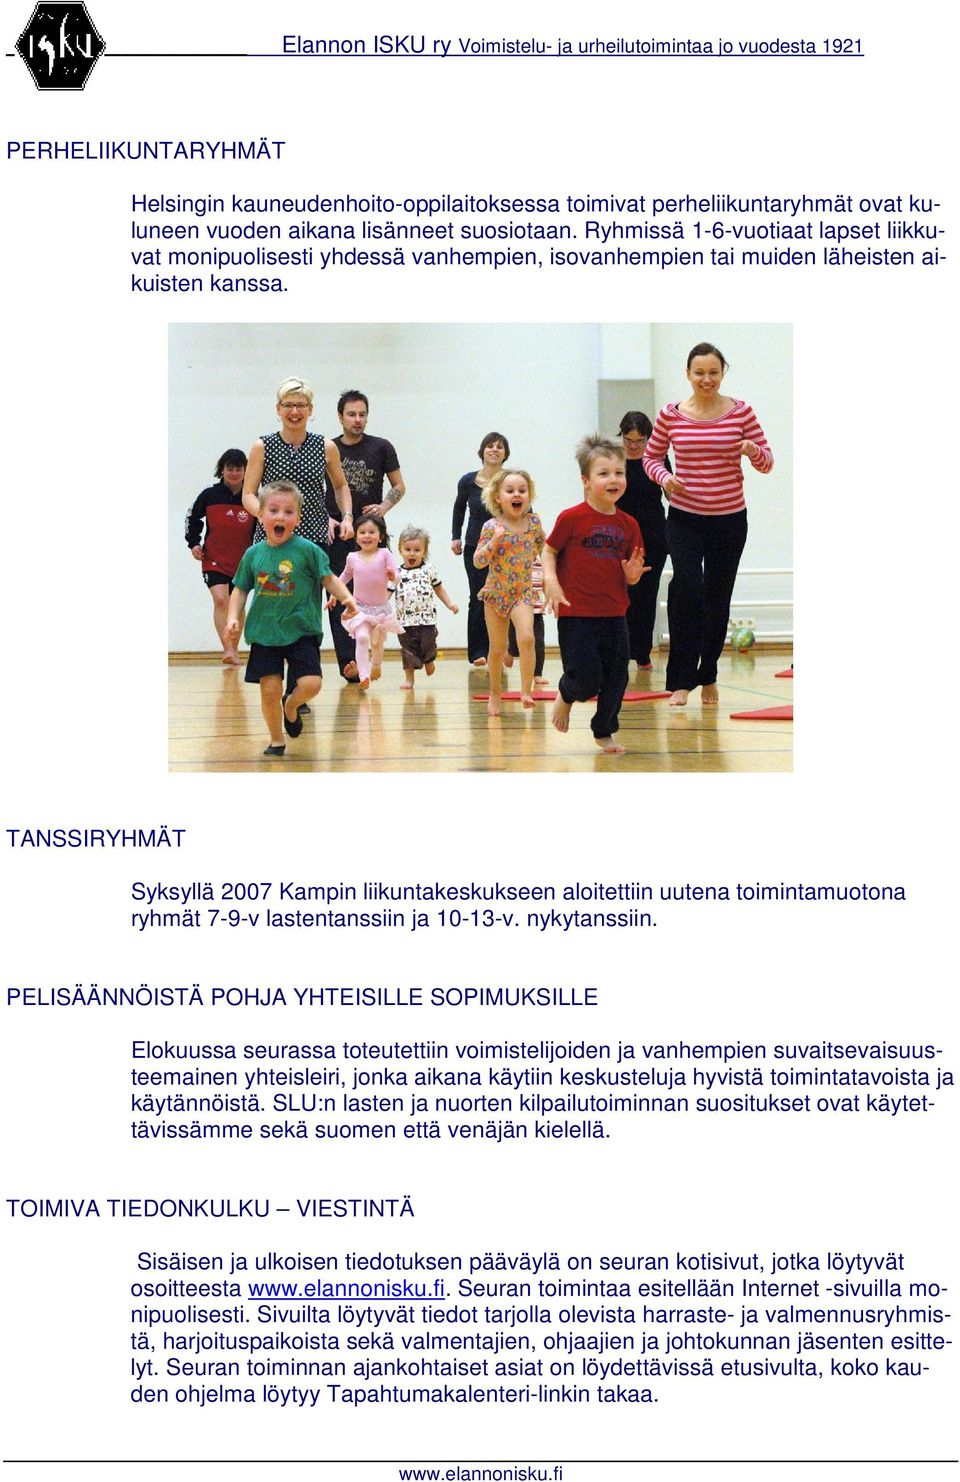 TANSSIRYHMÄT Syksyllä 2007 Kampin liikuntakeskukseen aloitettiin uutena toimintamuotona ryhmät 7-9-v lastentanssiin ja 10-13-v. nykytanssiin.